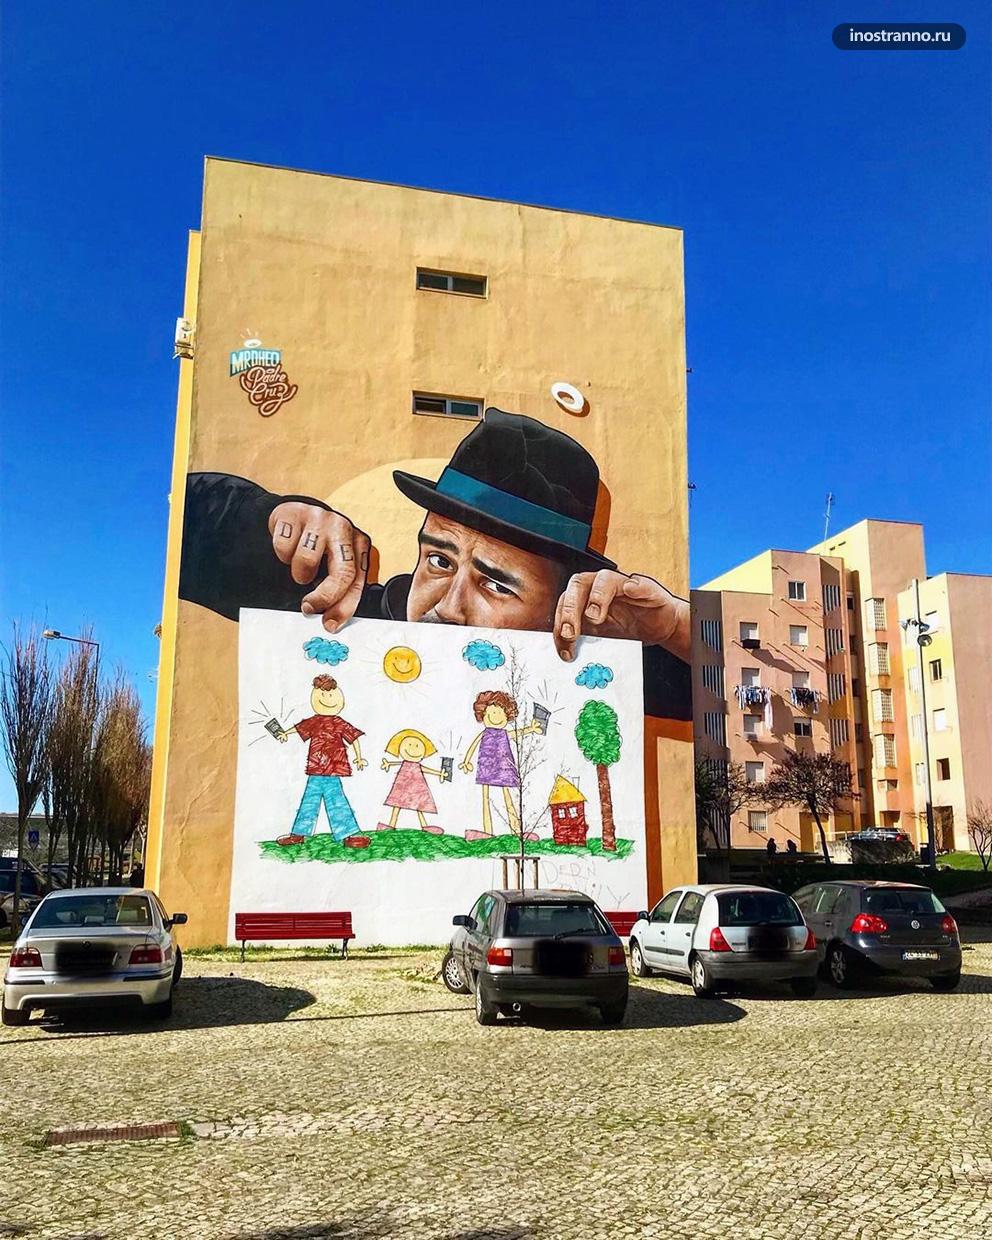 Стрит арт и граффити в обычном районе Лиссабона